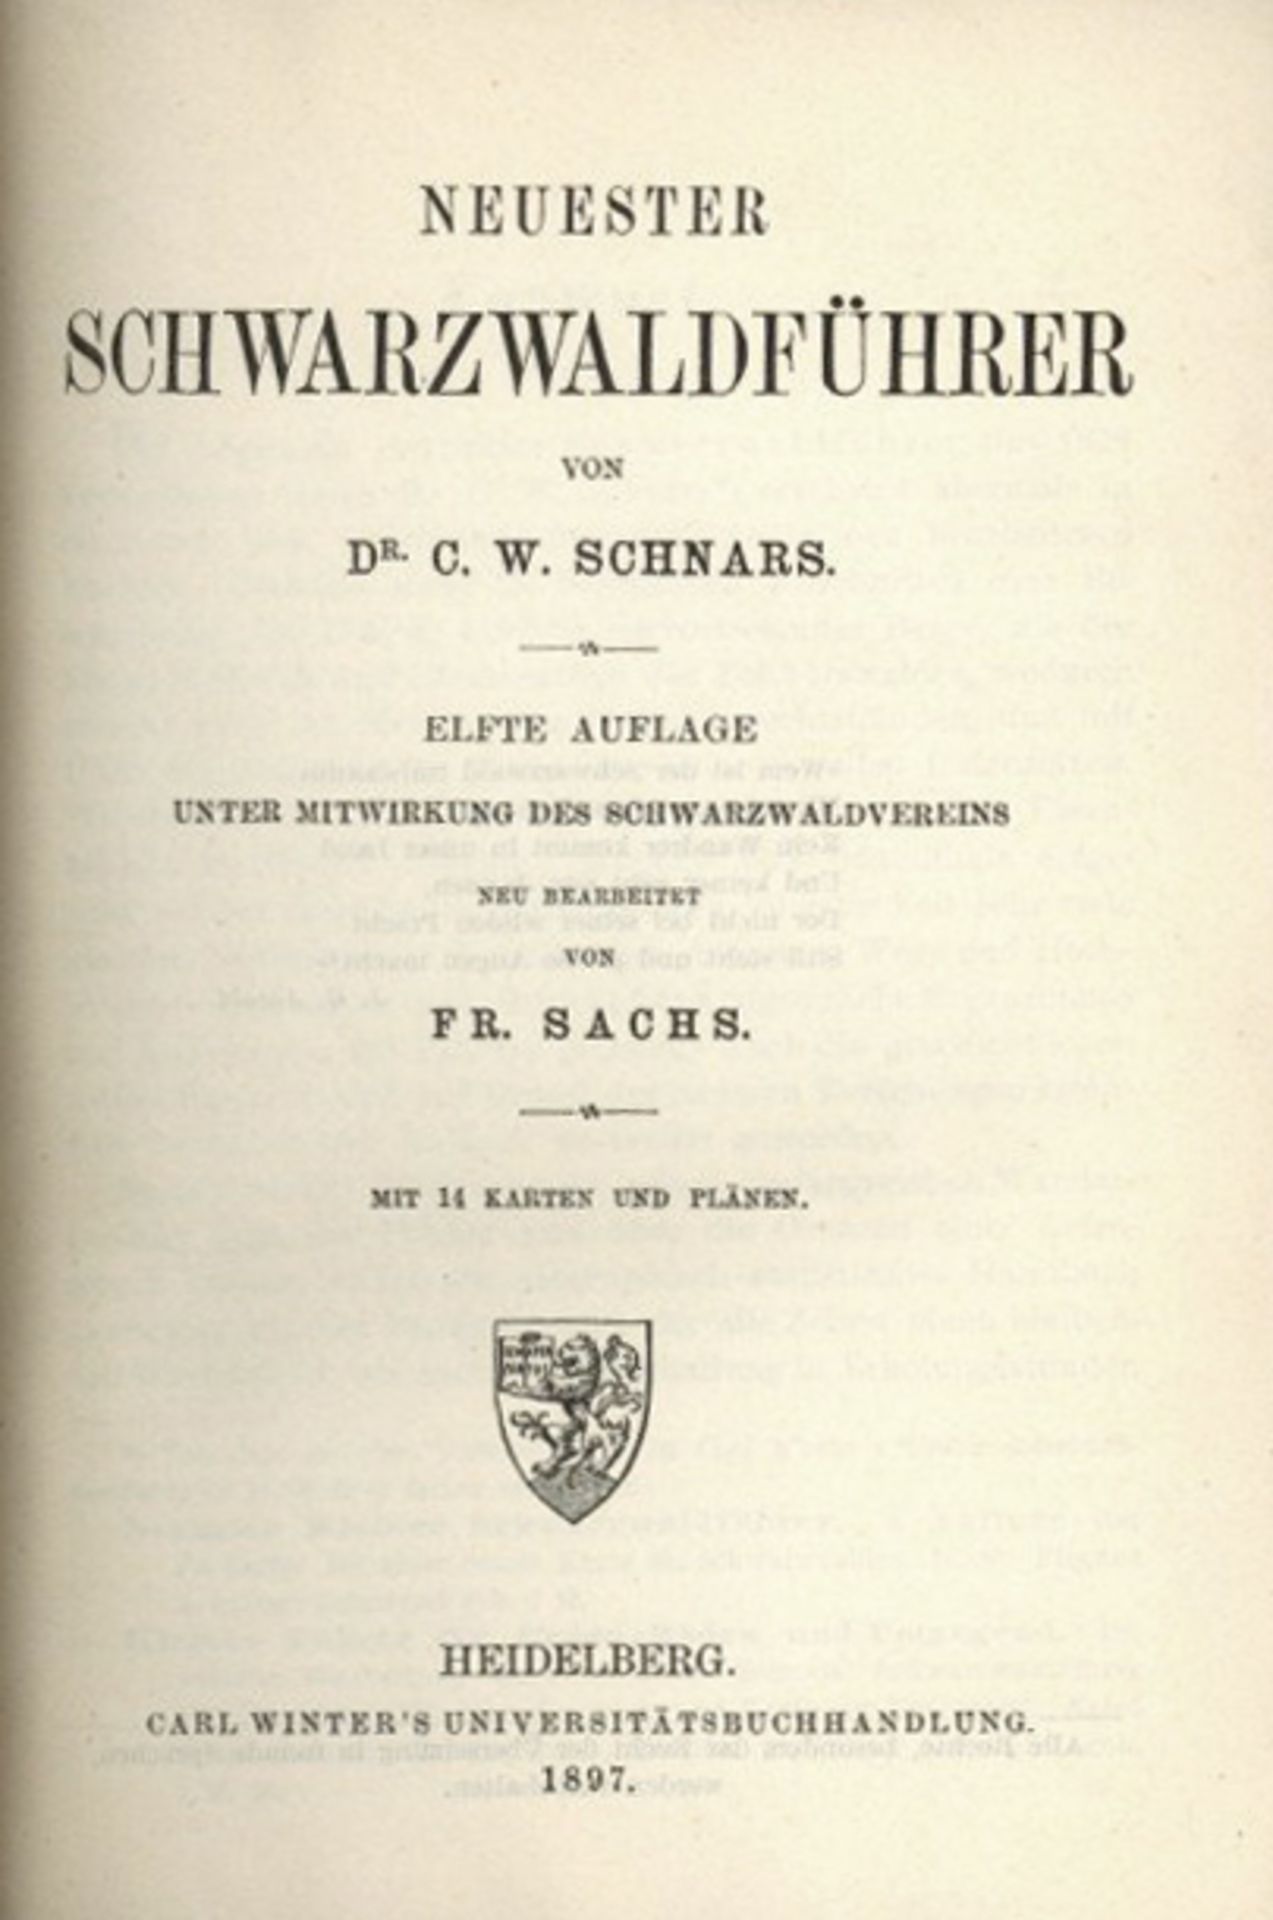 Schwarzwald Buch Neuester Schwarzwaldführer von Dr. Schnars, C.W. 1897, Universitätsbuchhandlung